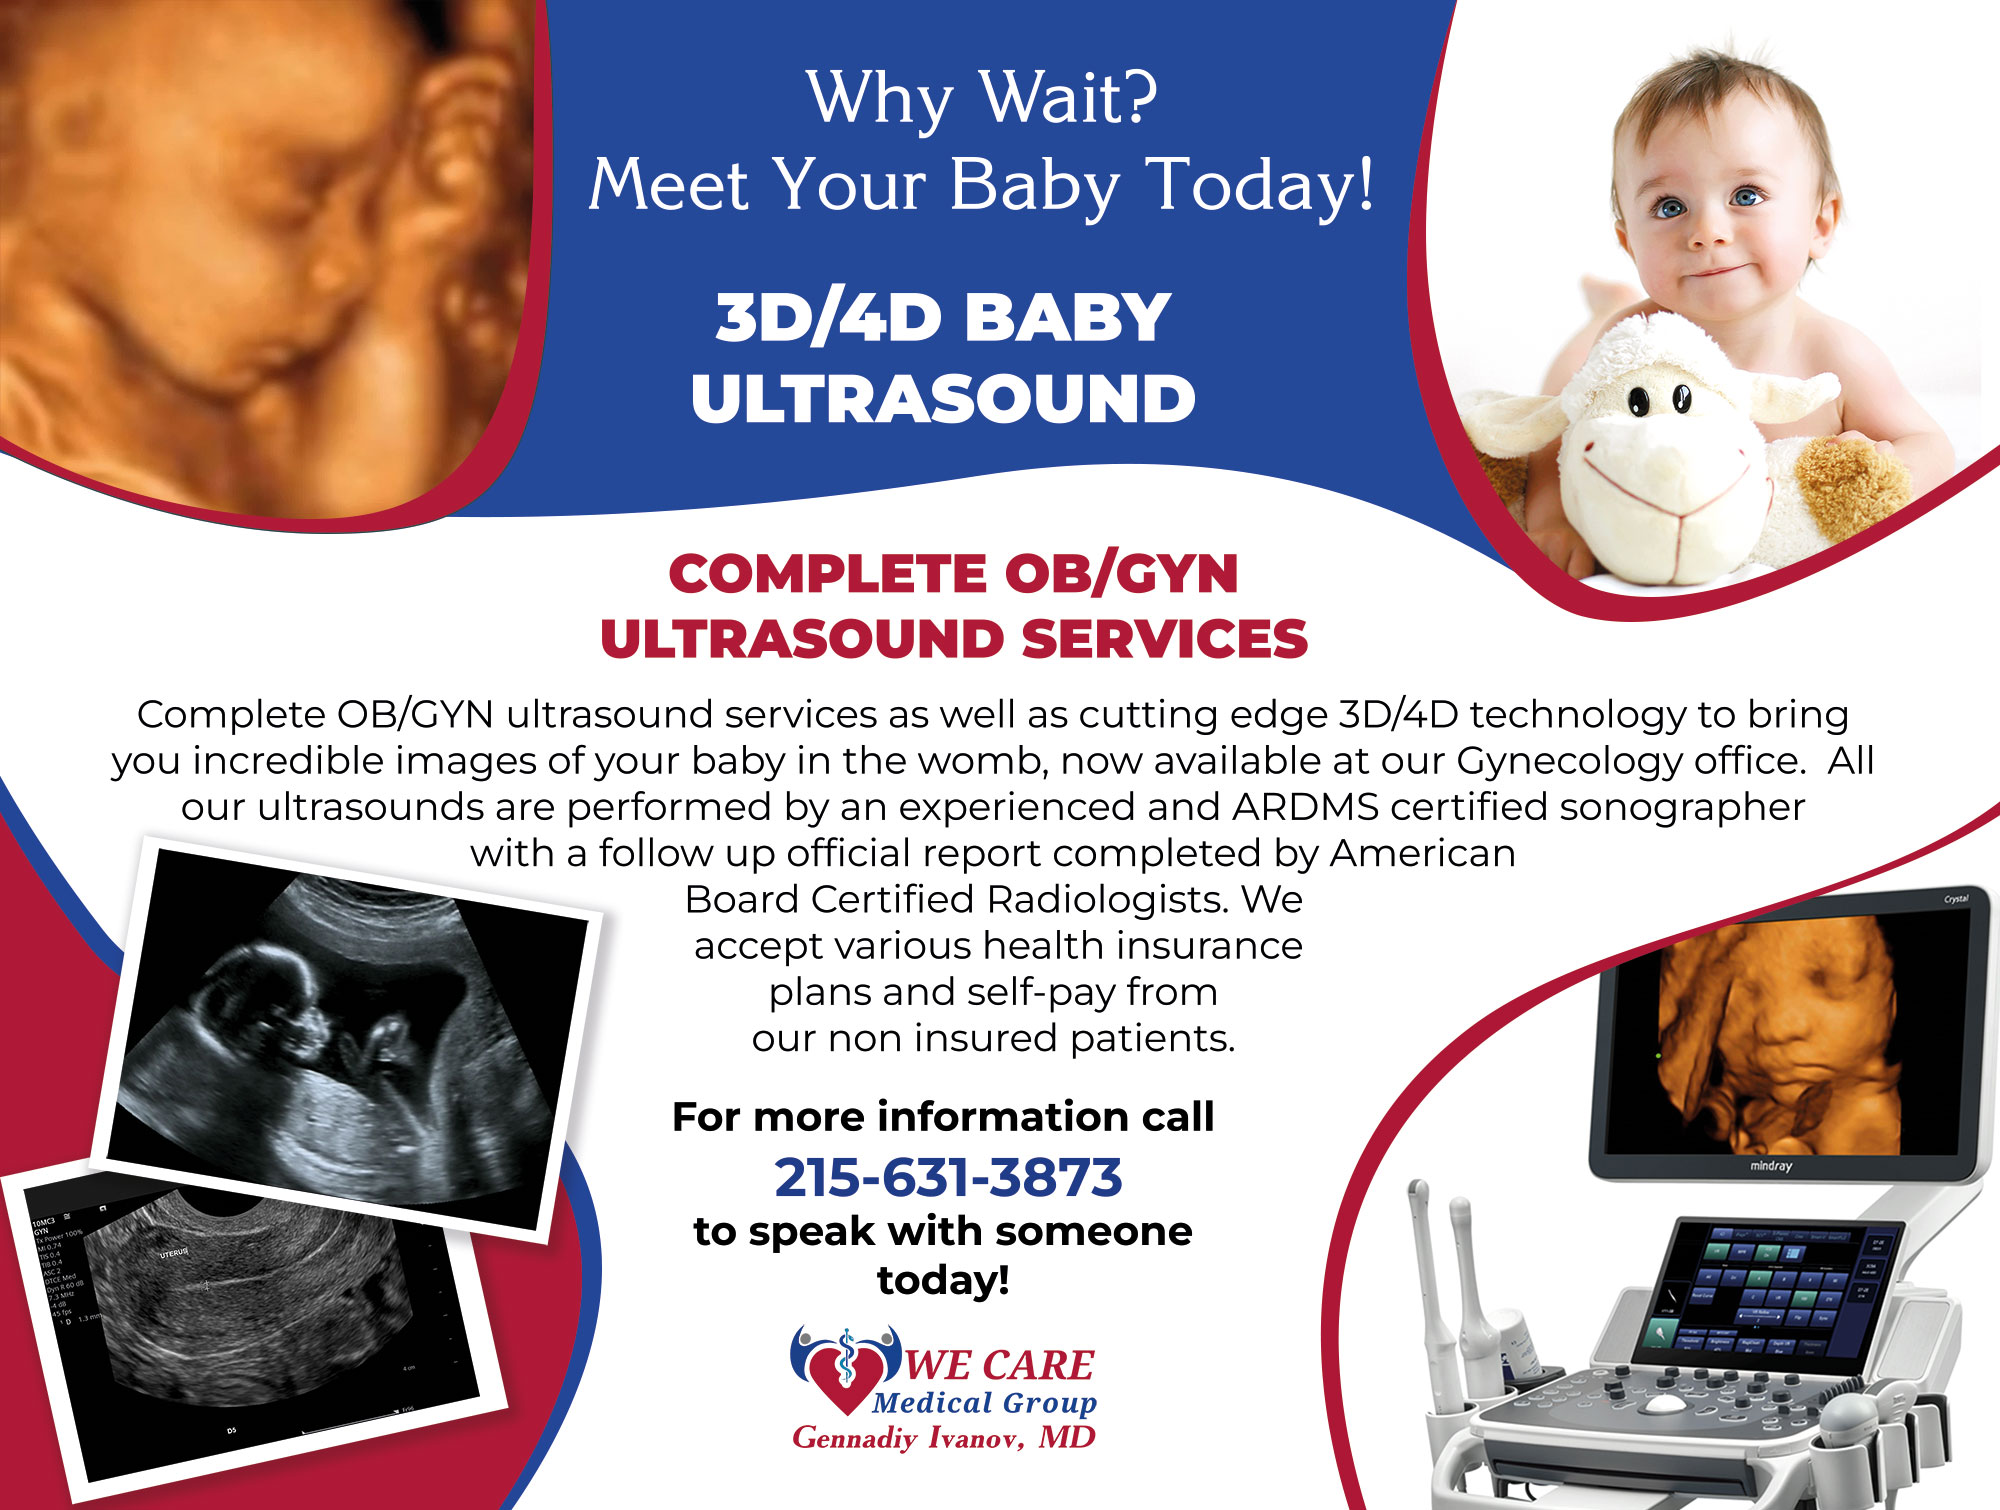 3D/4D baby ultrasound in Bucks County near me